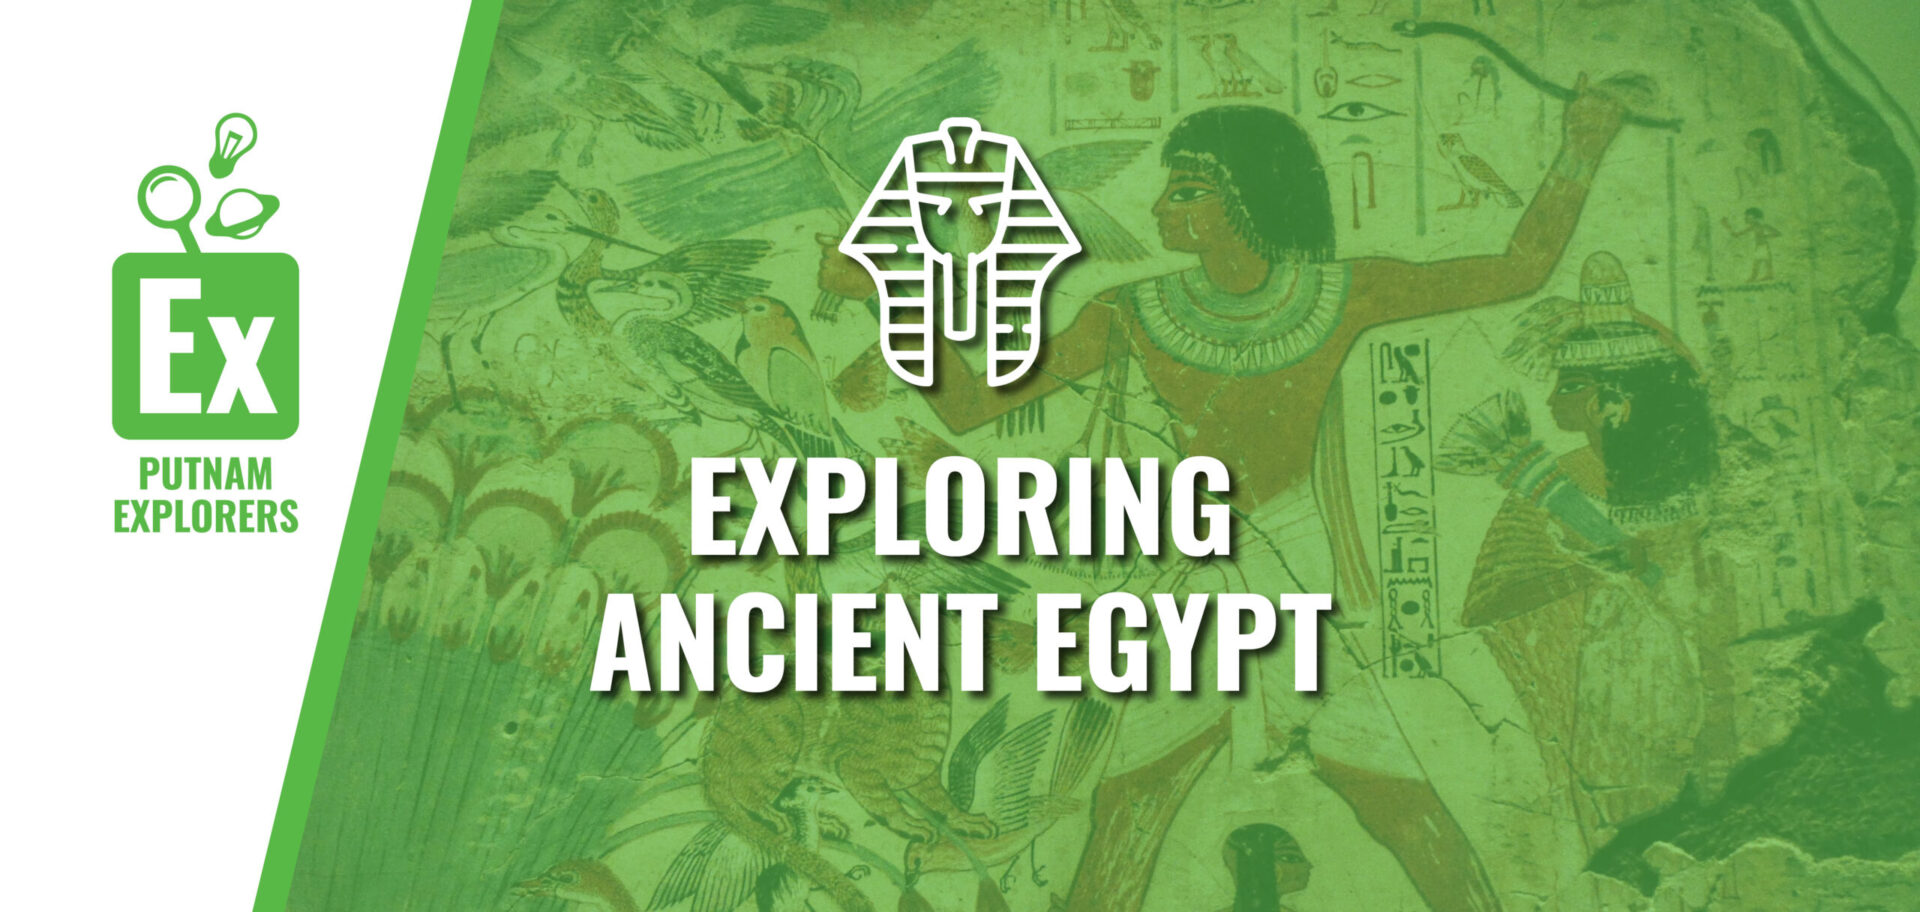 Putnam Explorers: Exploring Ancient Egypt